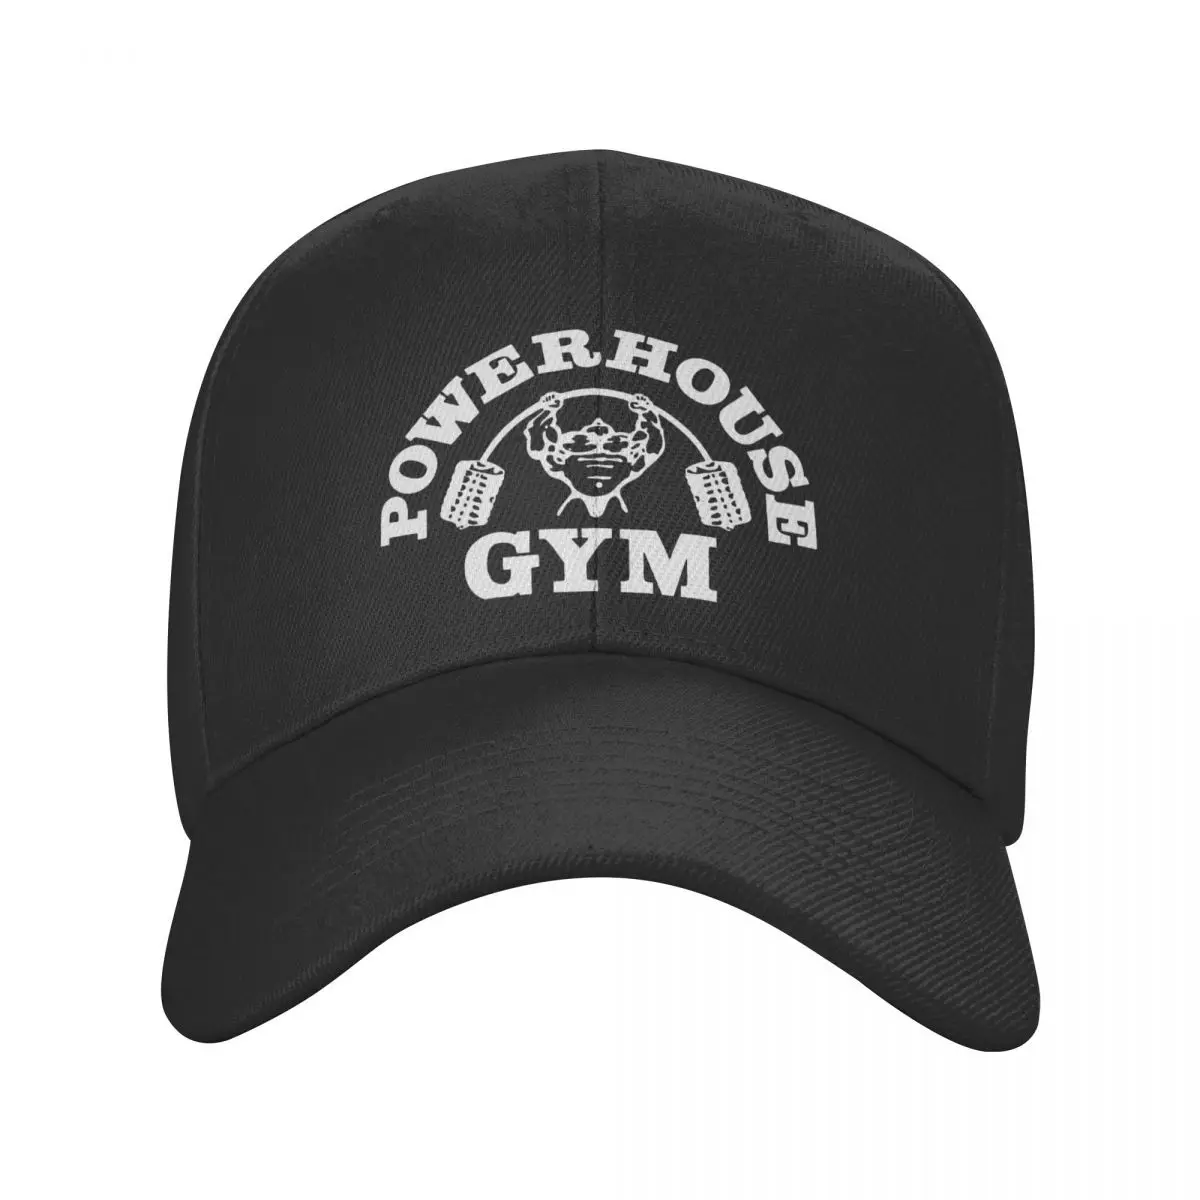 Бейсболка для спортзала Унисекс Powerhouse для взрослых, для бодибилдинга, фитнеса, Регулируемая мышцами, шляпа для папы, женские, мужские, хип-хоп бейсболки Snapback